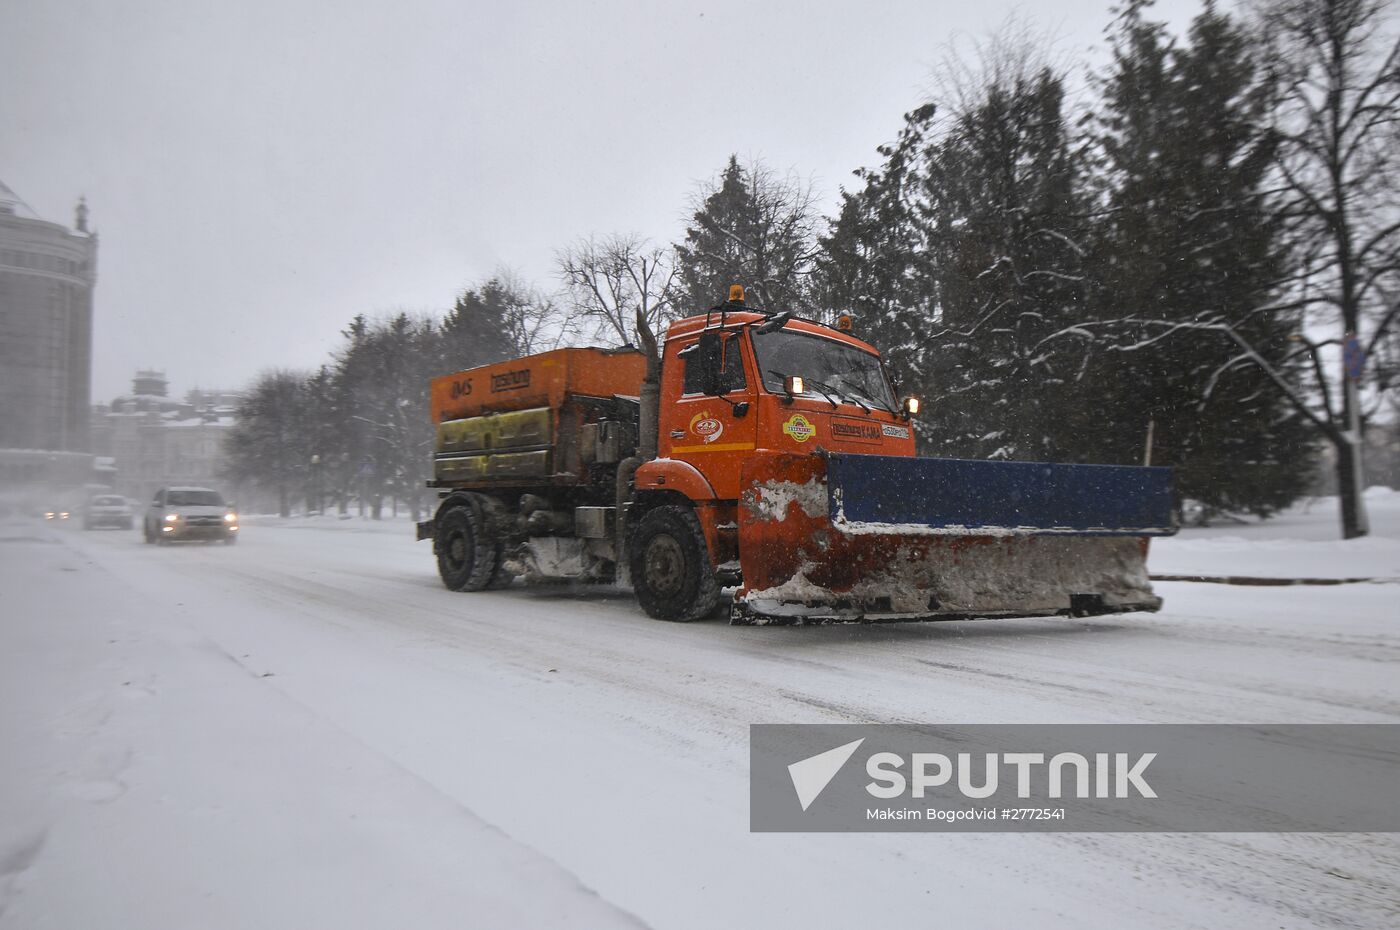 Snow removal in Kazan